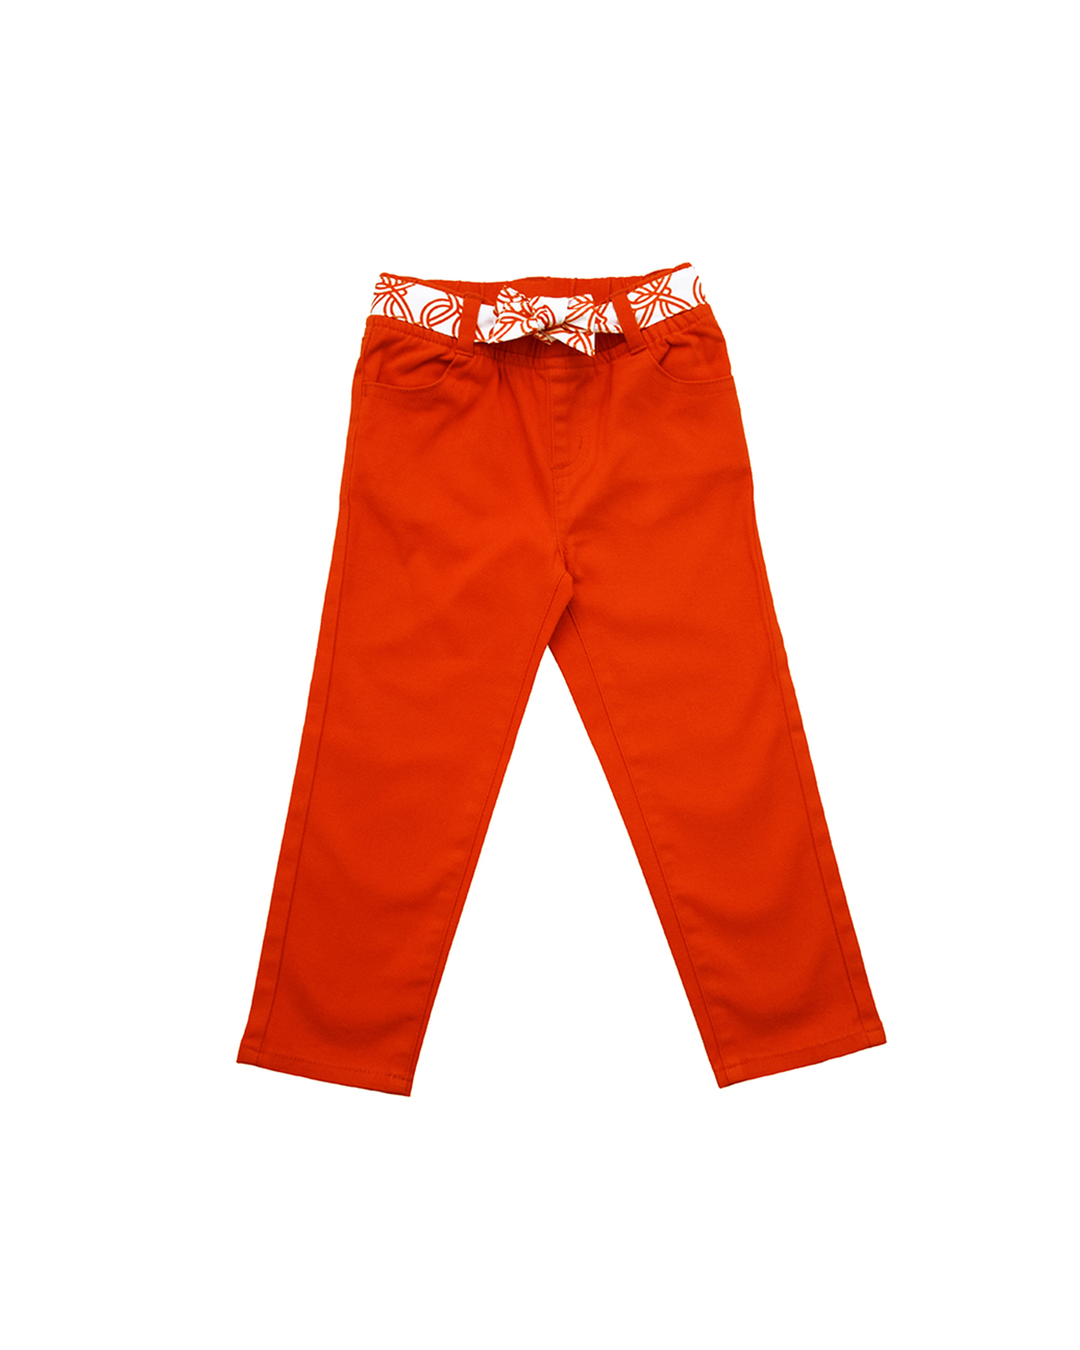 Pantalón anaranjado con cinturón